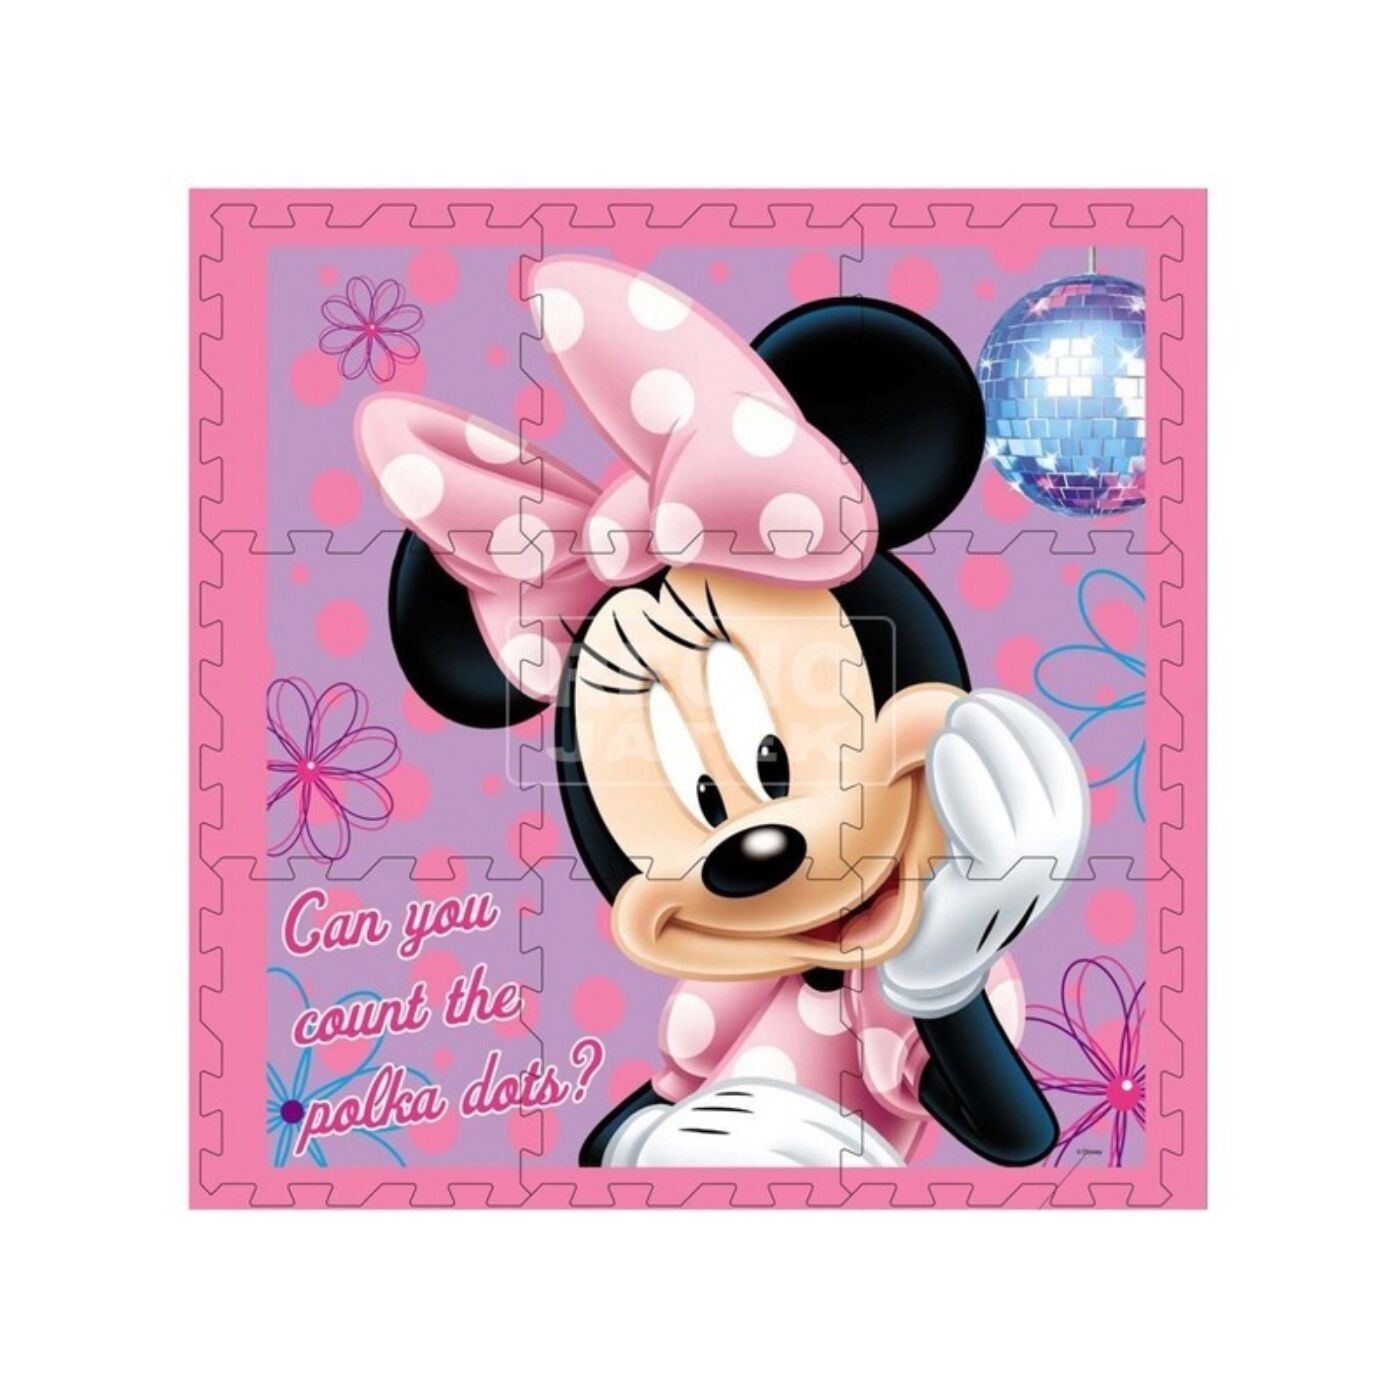 Mickey egér habszivacs puzzle szőnyeg